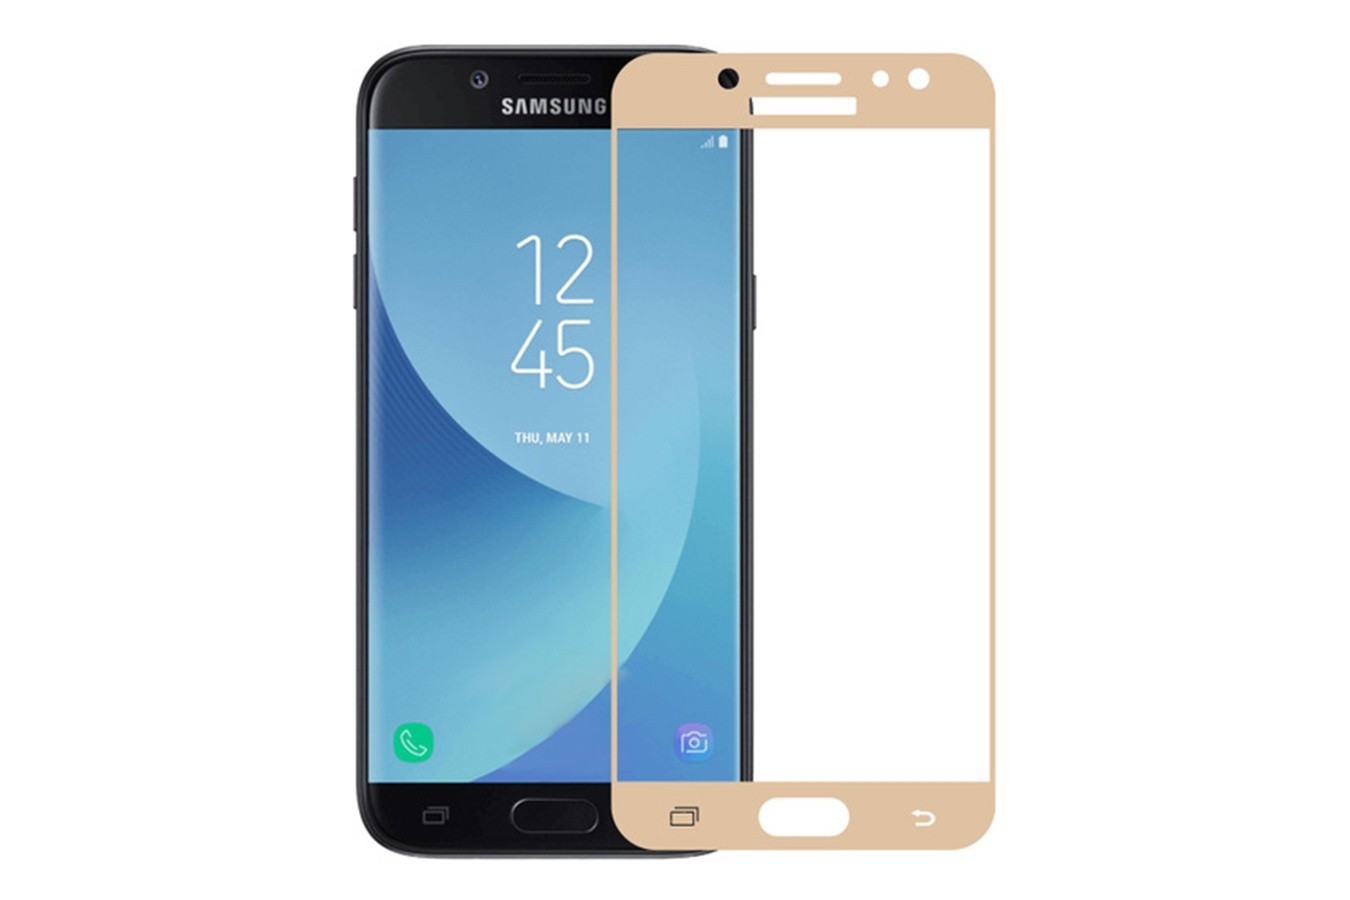 Защитное стекло для Samsung Galaxy J5 2017 (J530F) с полной проклейкой (Full Screen), золотое - фото